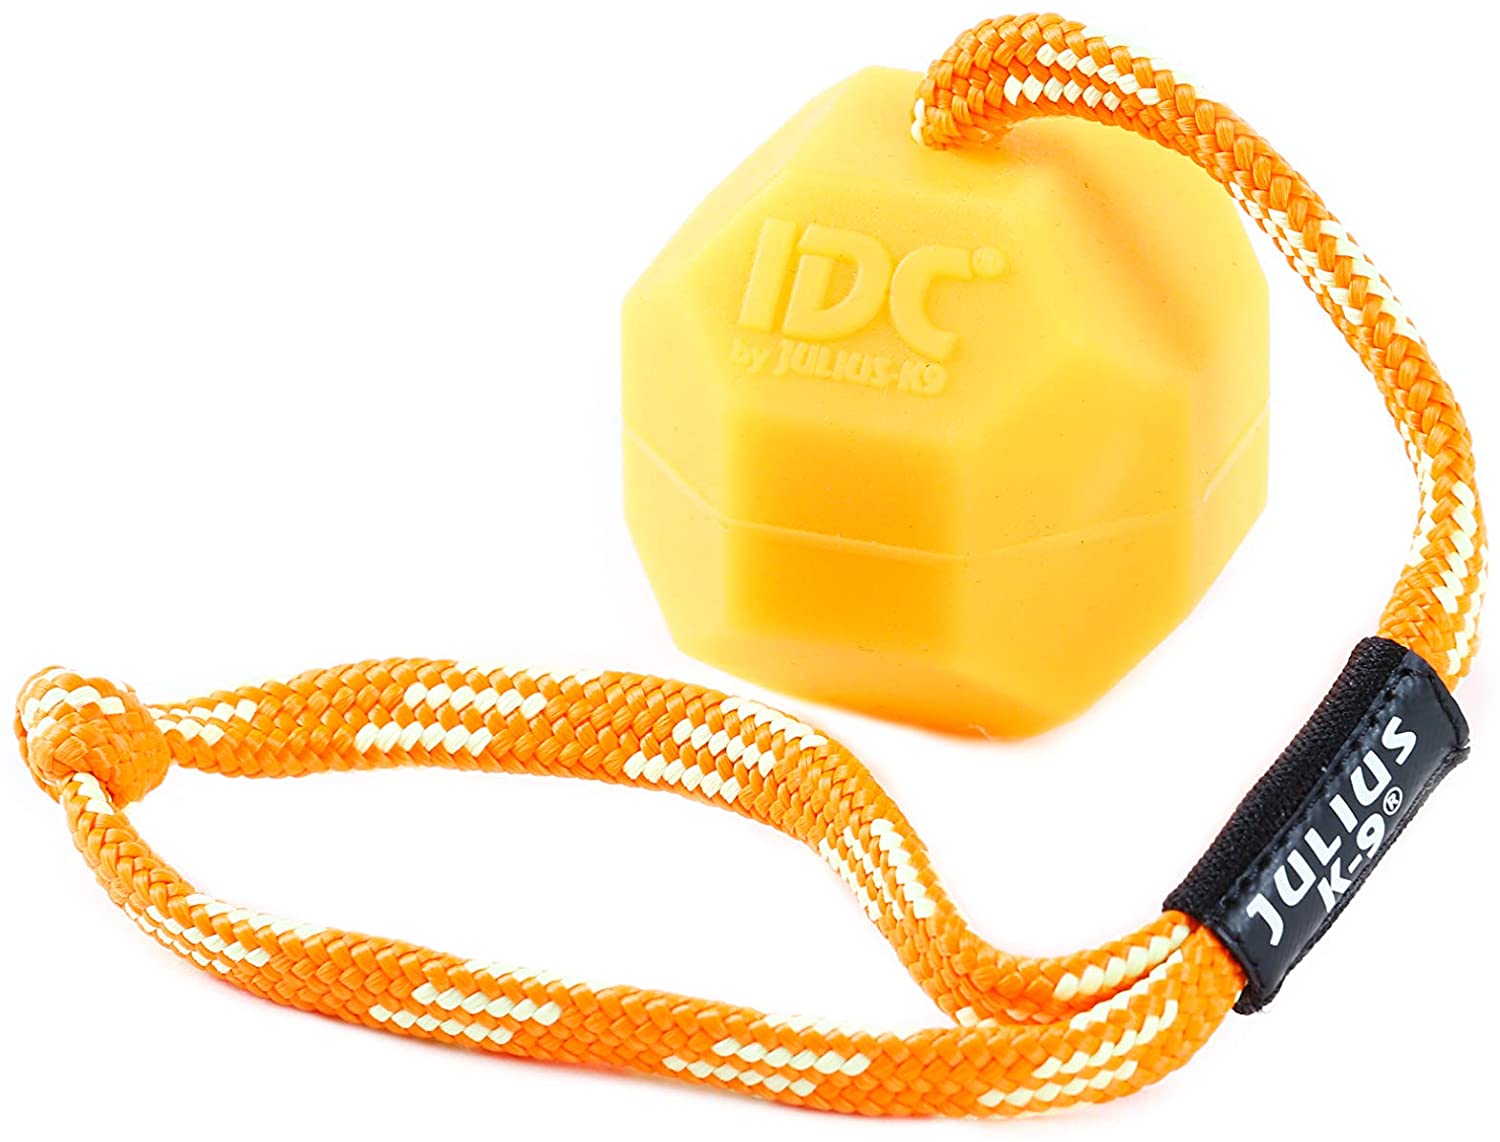  Julius-K9 242-BLL-60-ORW Fluorescens Ball with String Diam.60mm - Smooth, Orange, Soft, Un tamaño 